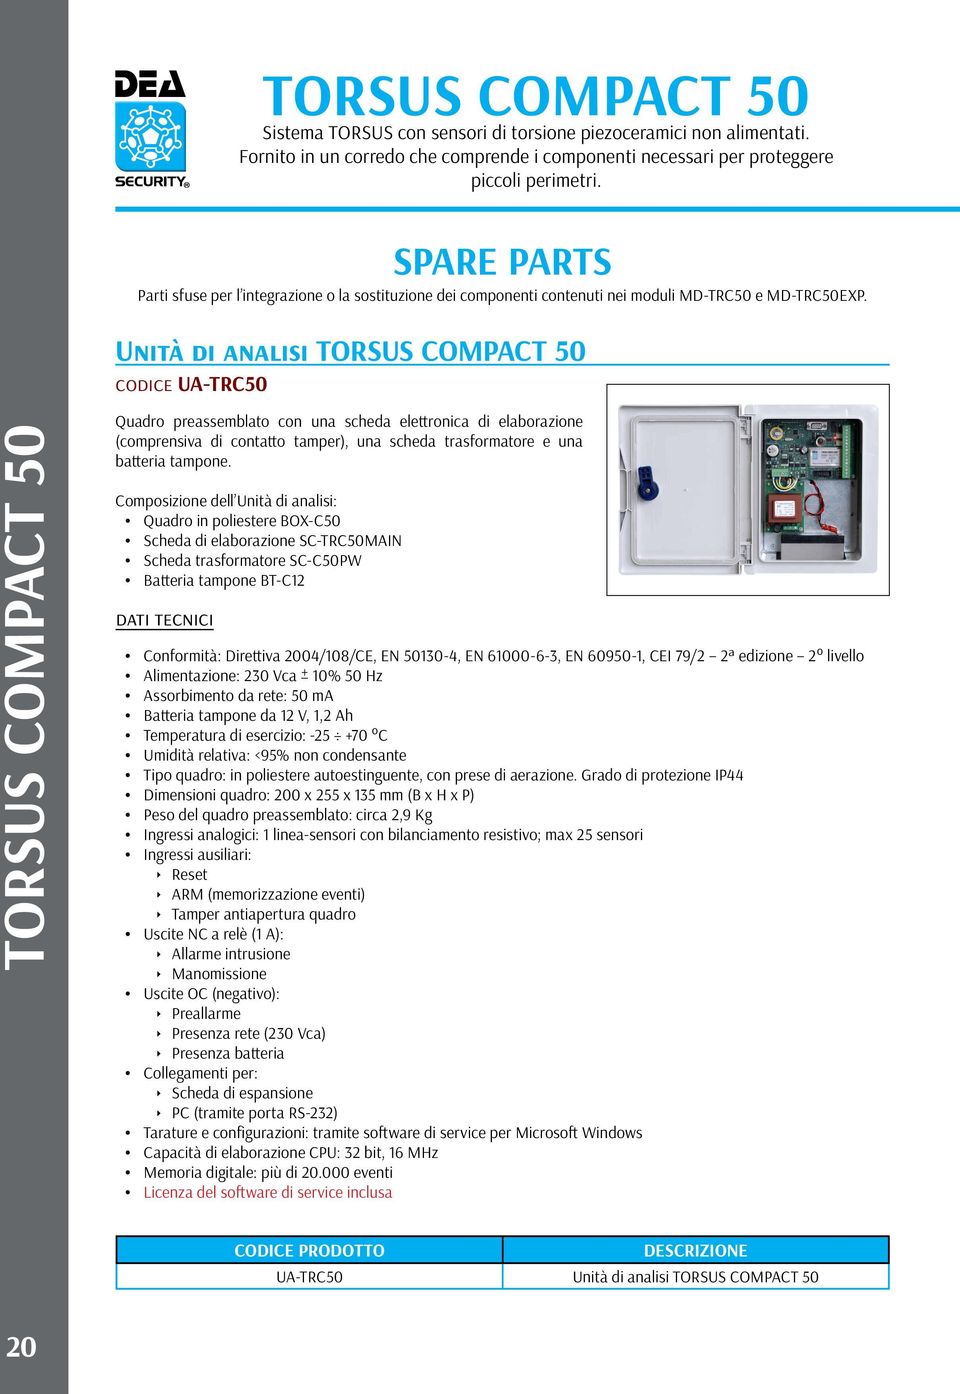 Unità di analisi TORSUS COMPACT 50 codice UA-TRC50 TORSUS COMPACT 50 Quadro preassemblato con una scheda elettronica di elaborazione (comprensiva di contatto tamper), una scheda trasformatore e una